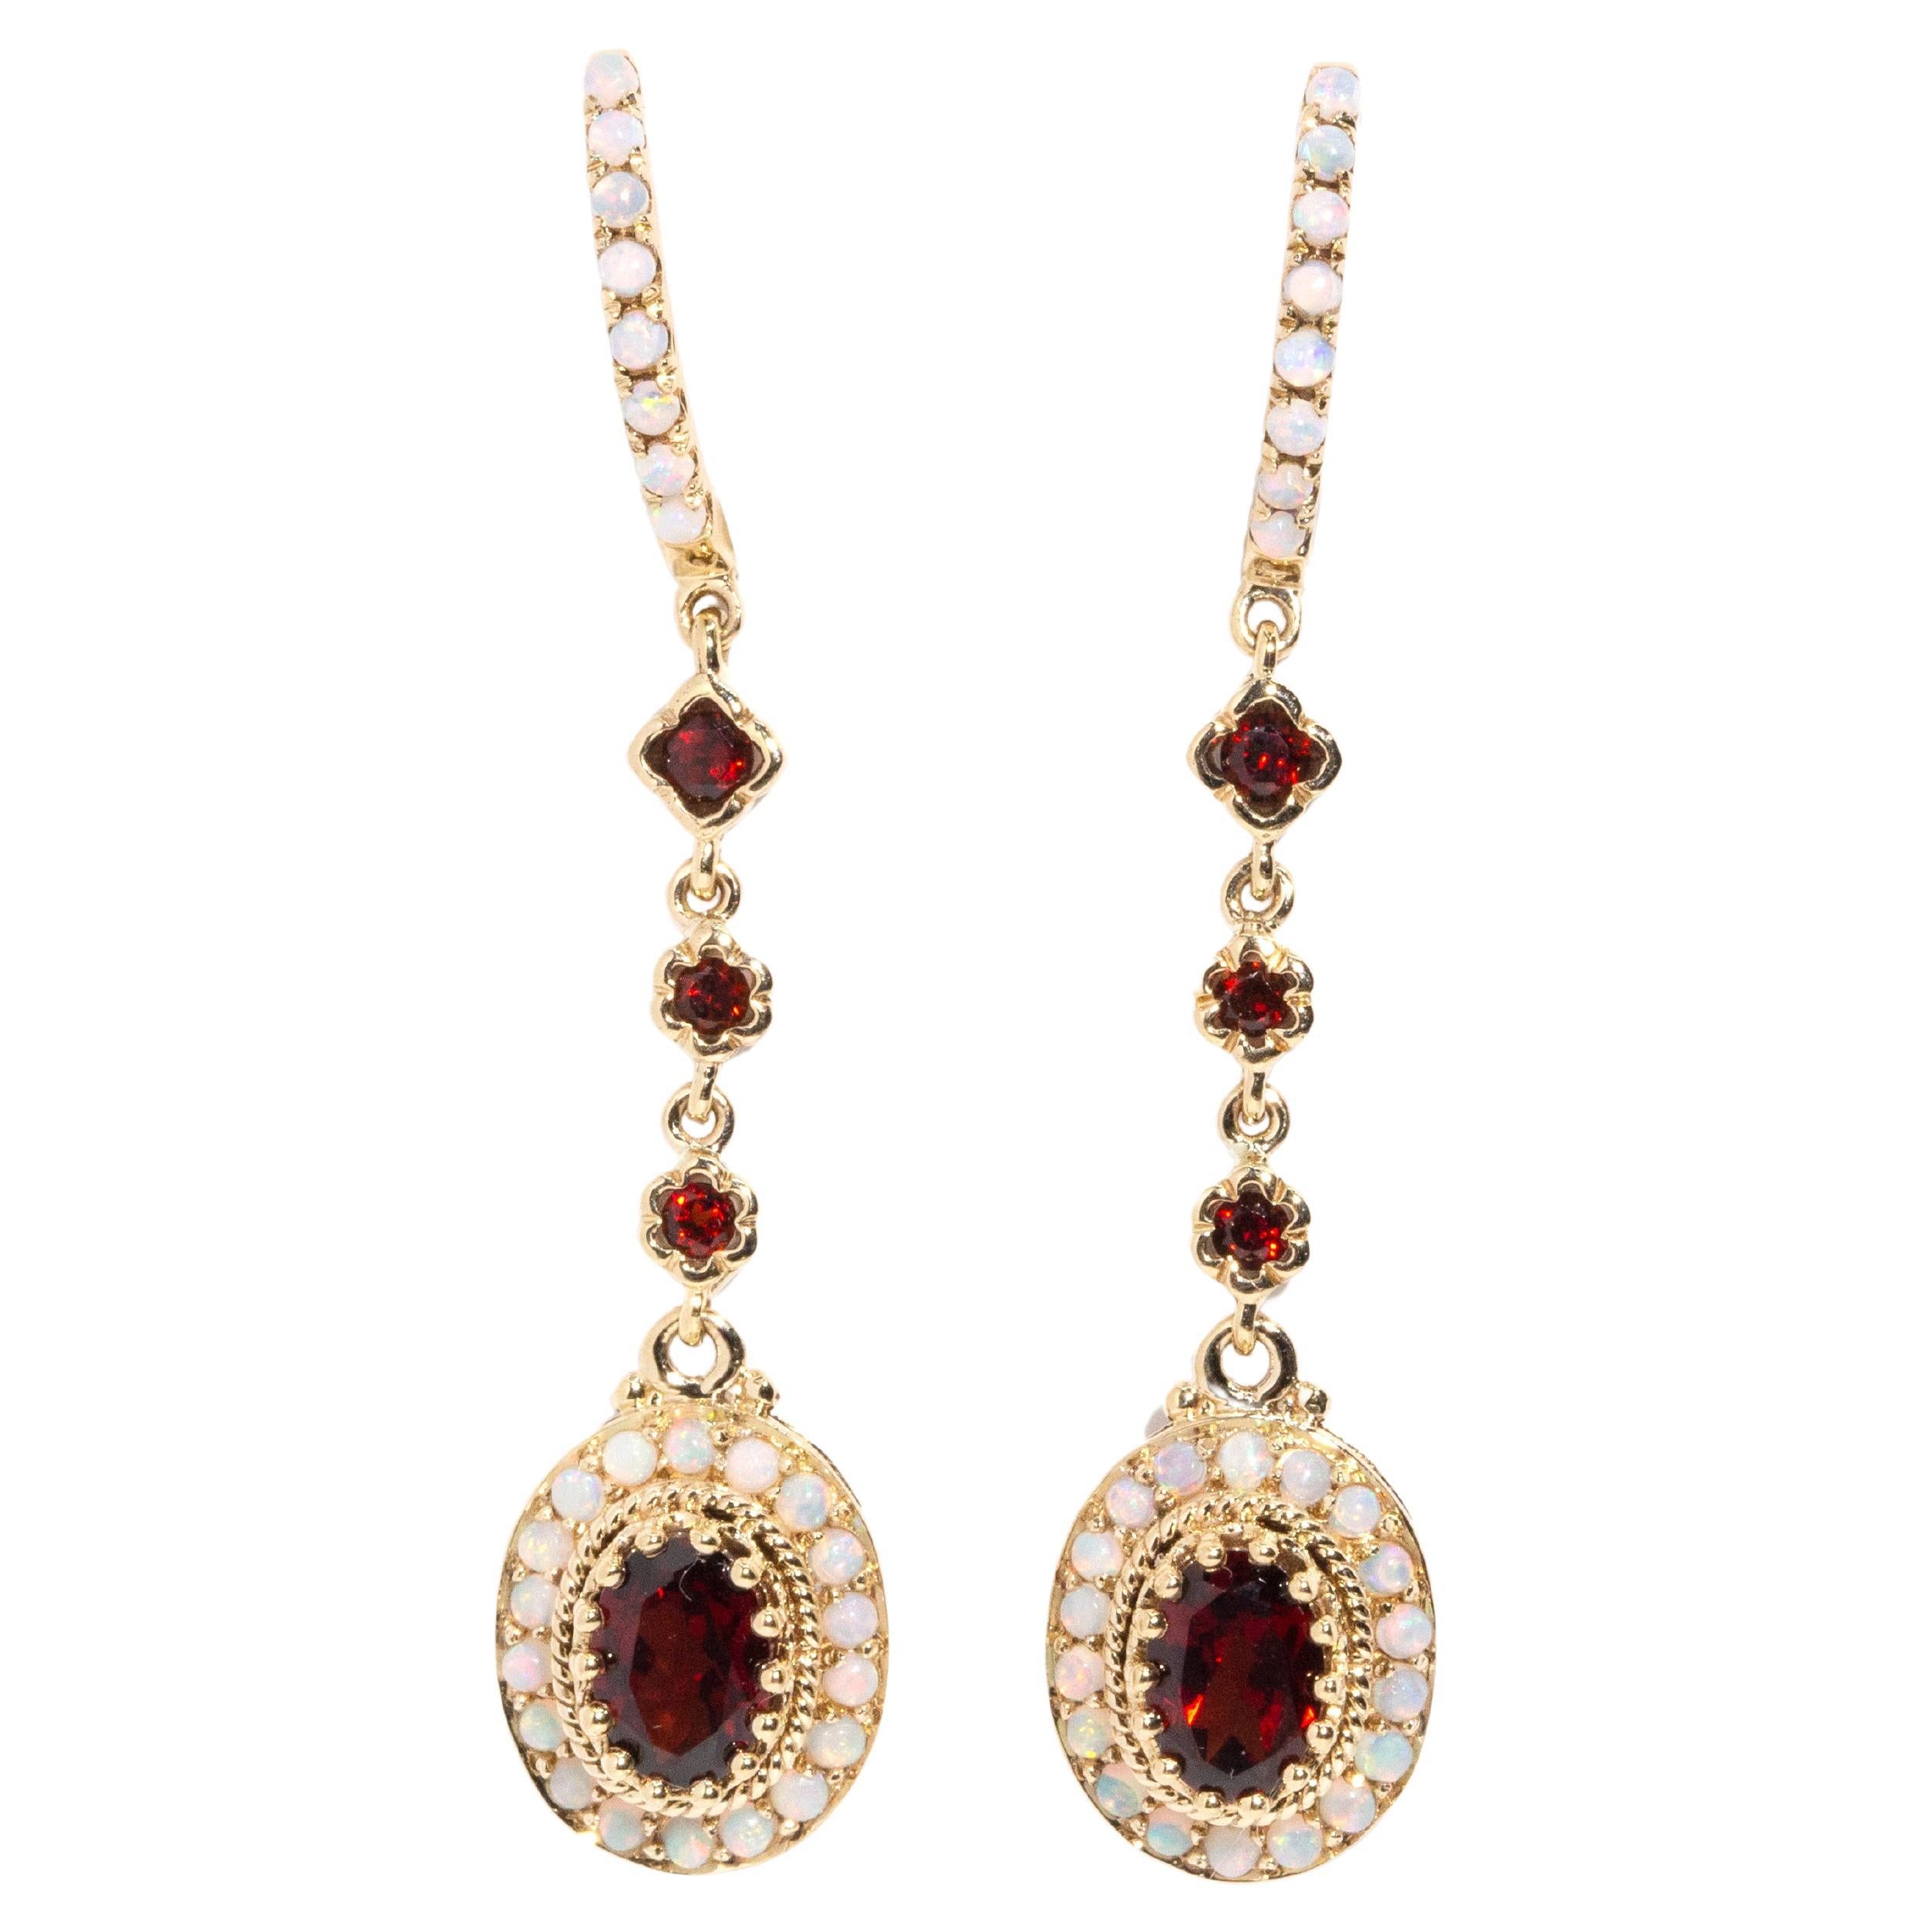 Vintage Inspired Australian Opal & Deep Red Garnet Drop Earrings 9 Carat Gold For Sale